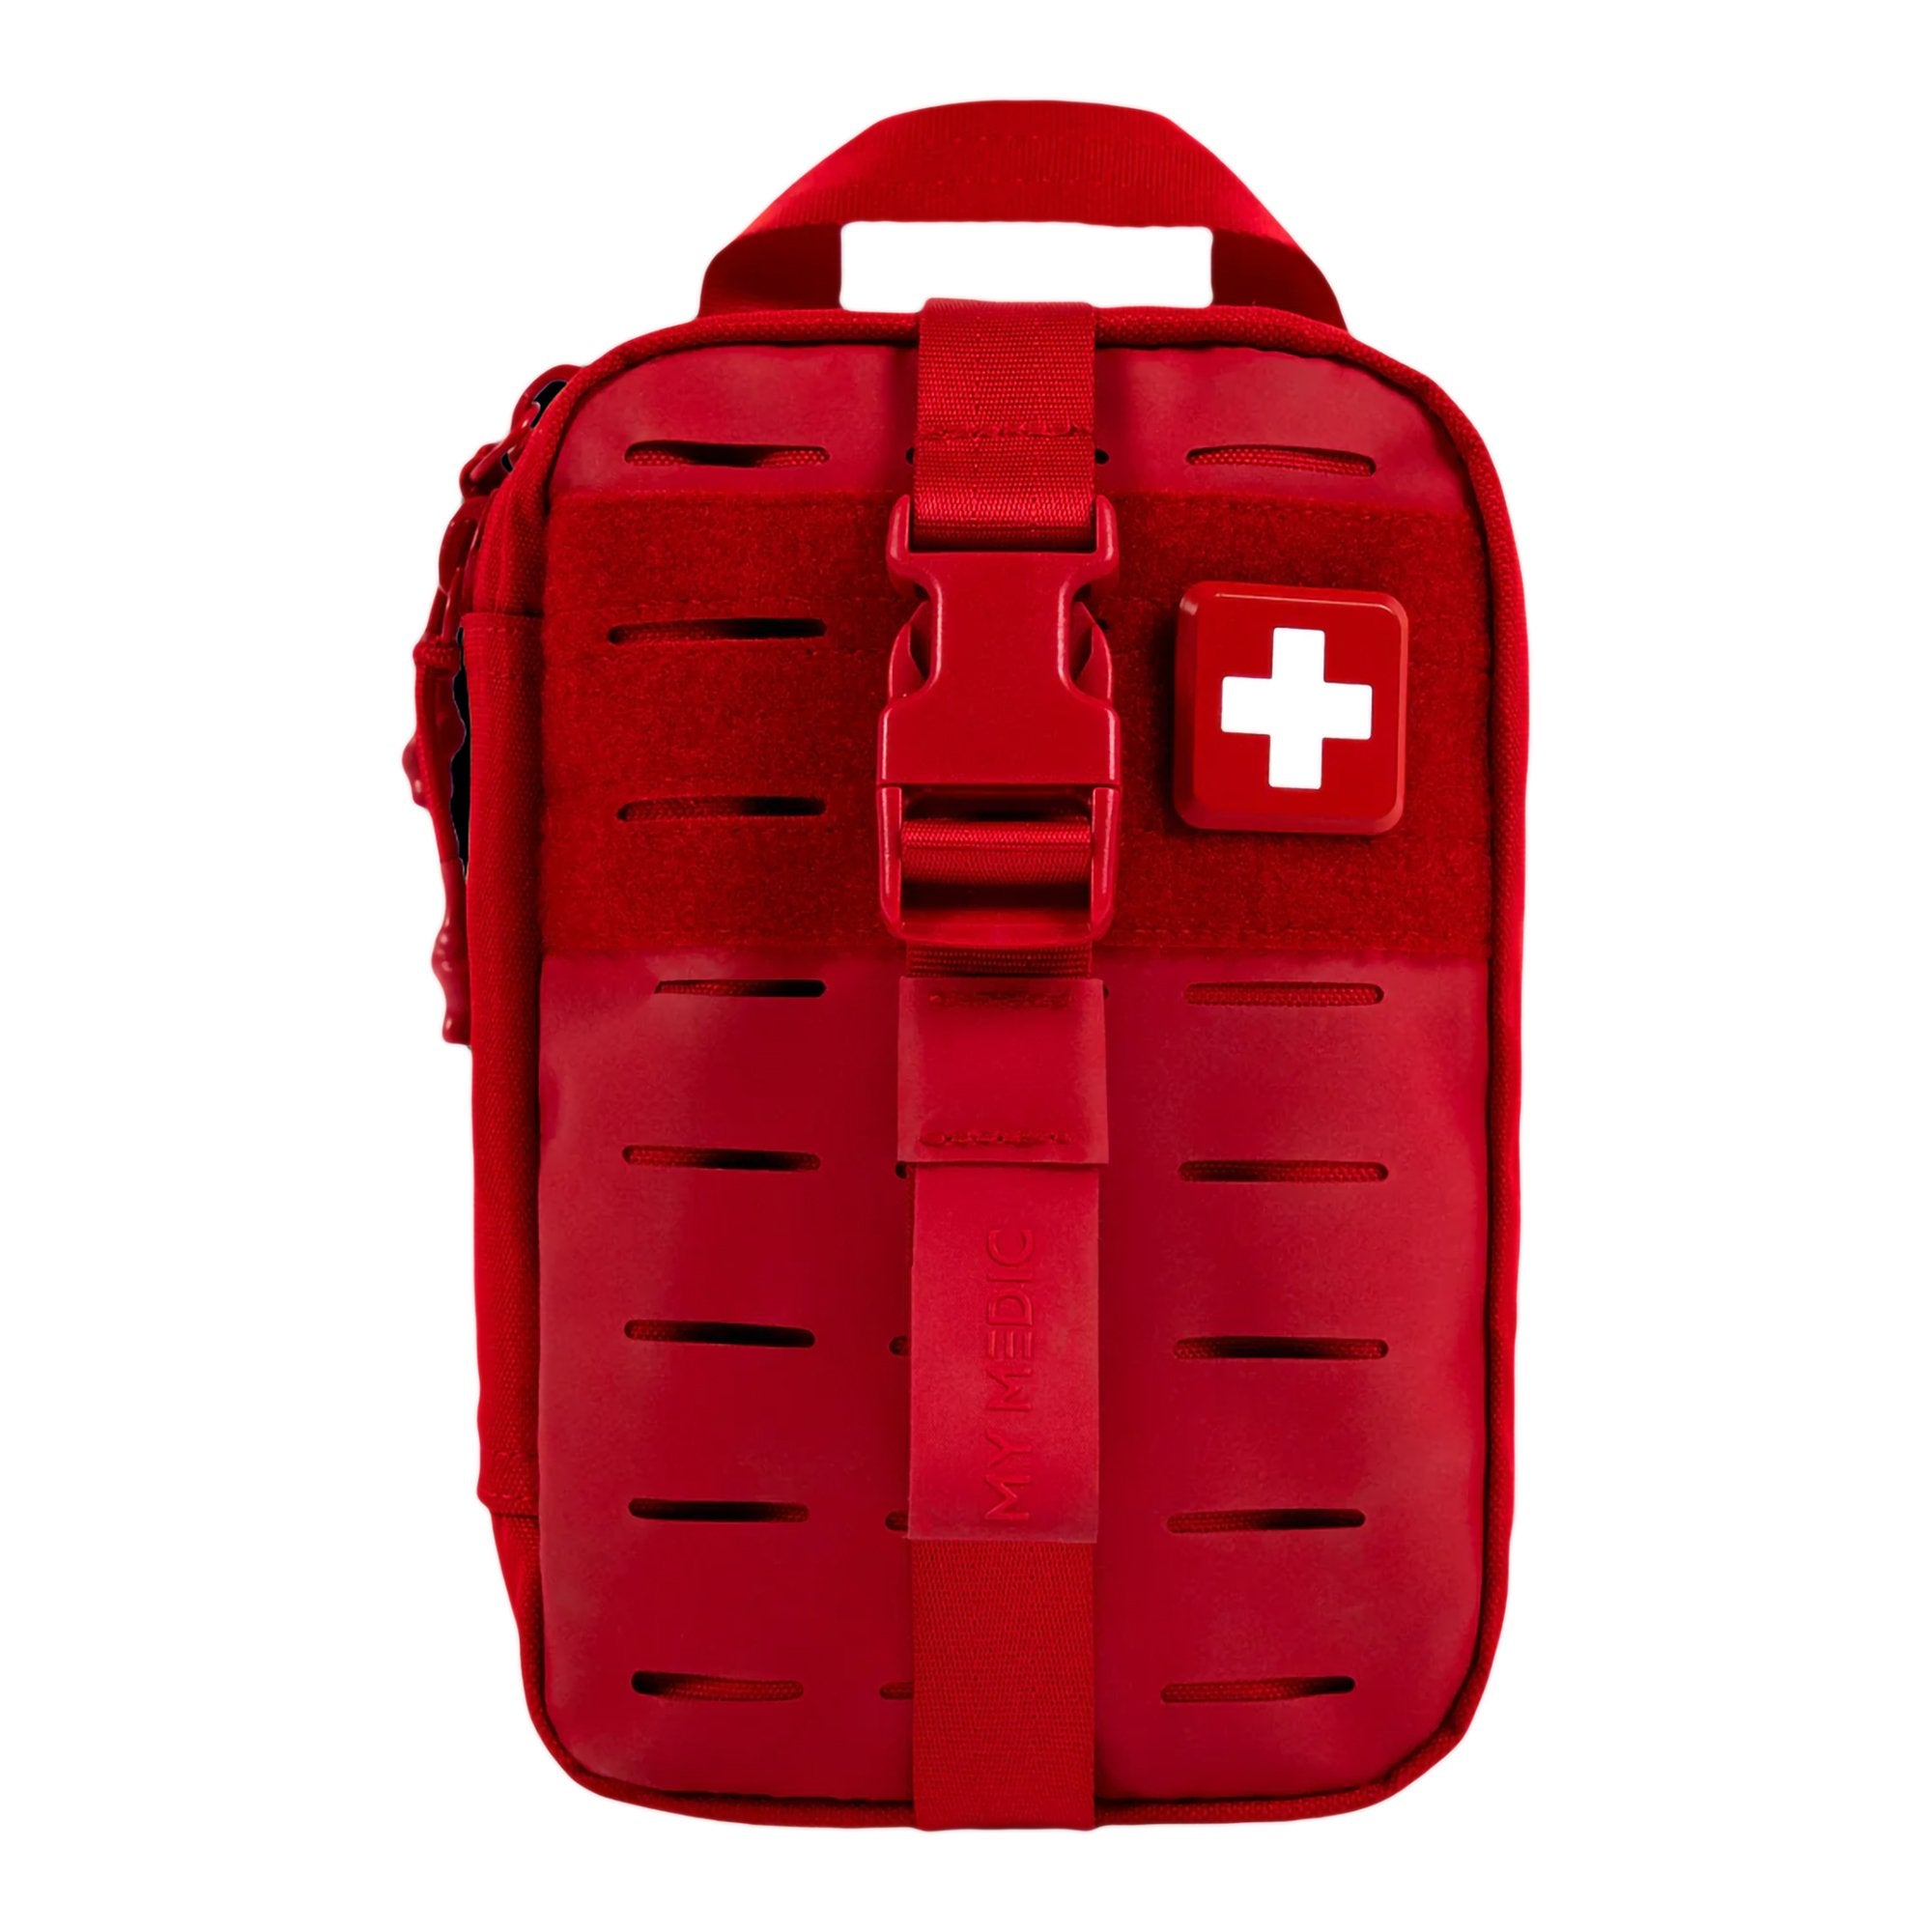 My Medic? MyFak Mini Standard First Aid Kit, Red